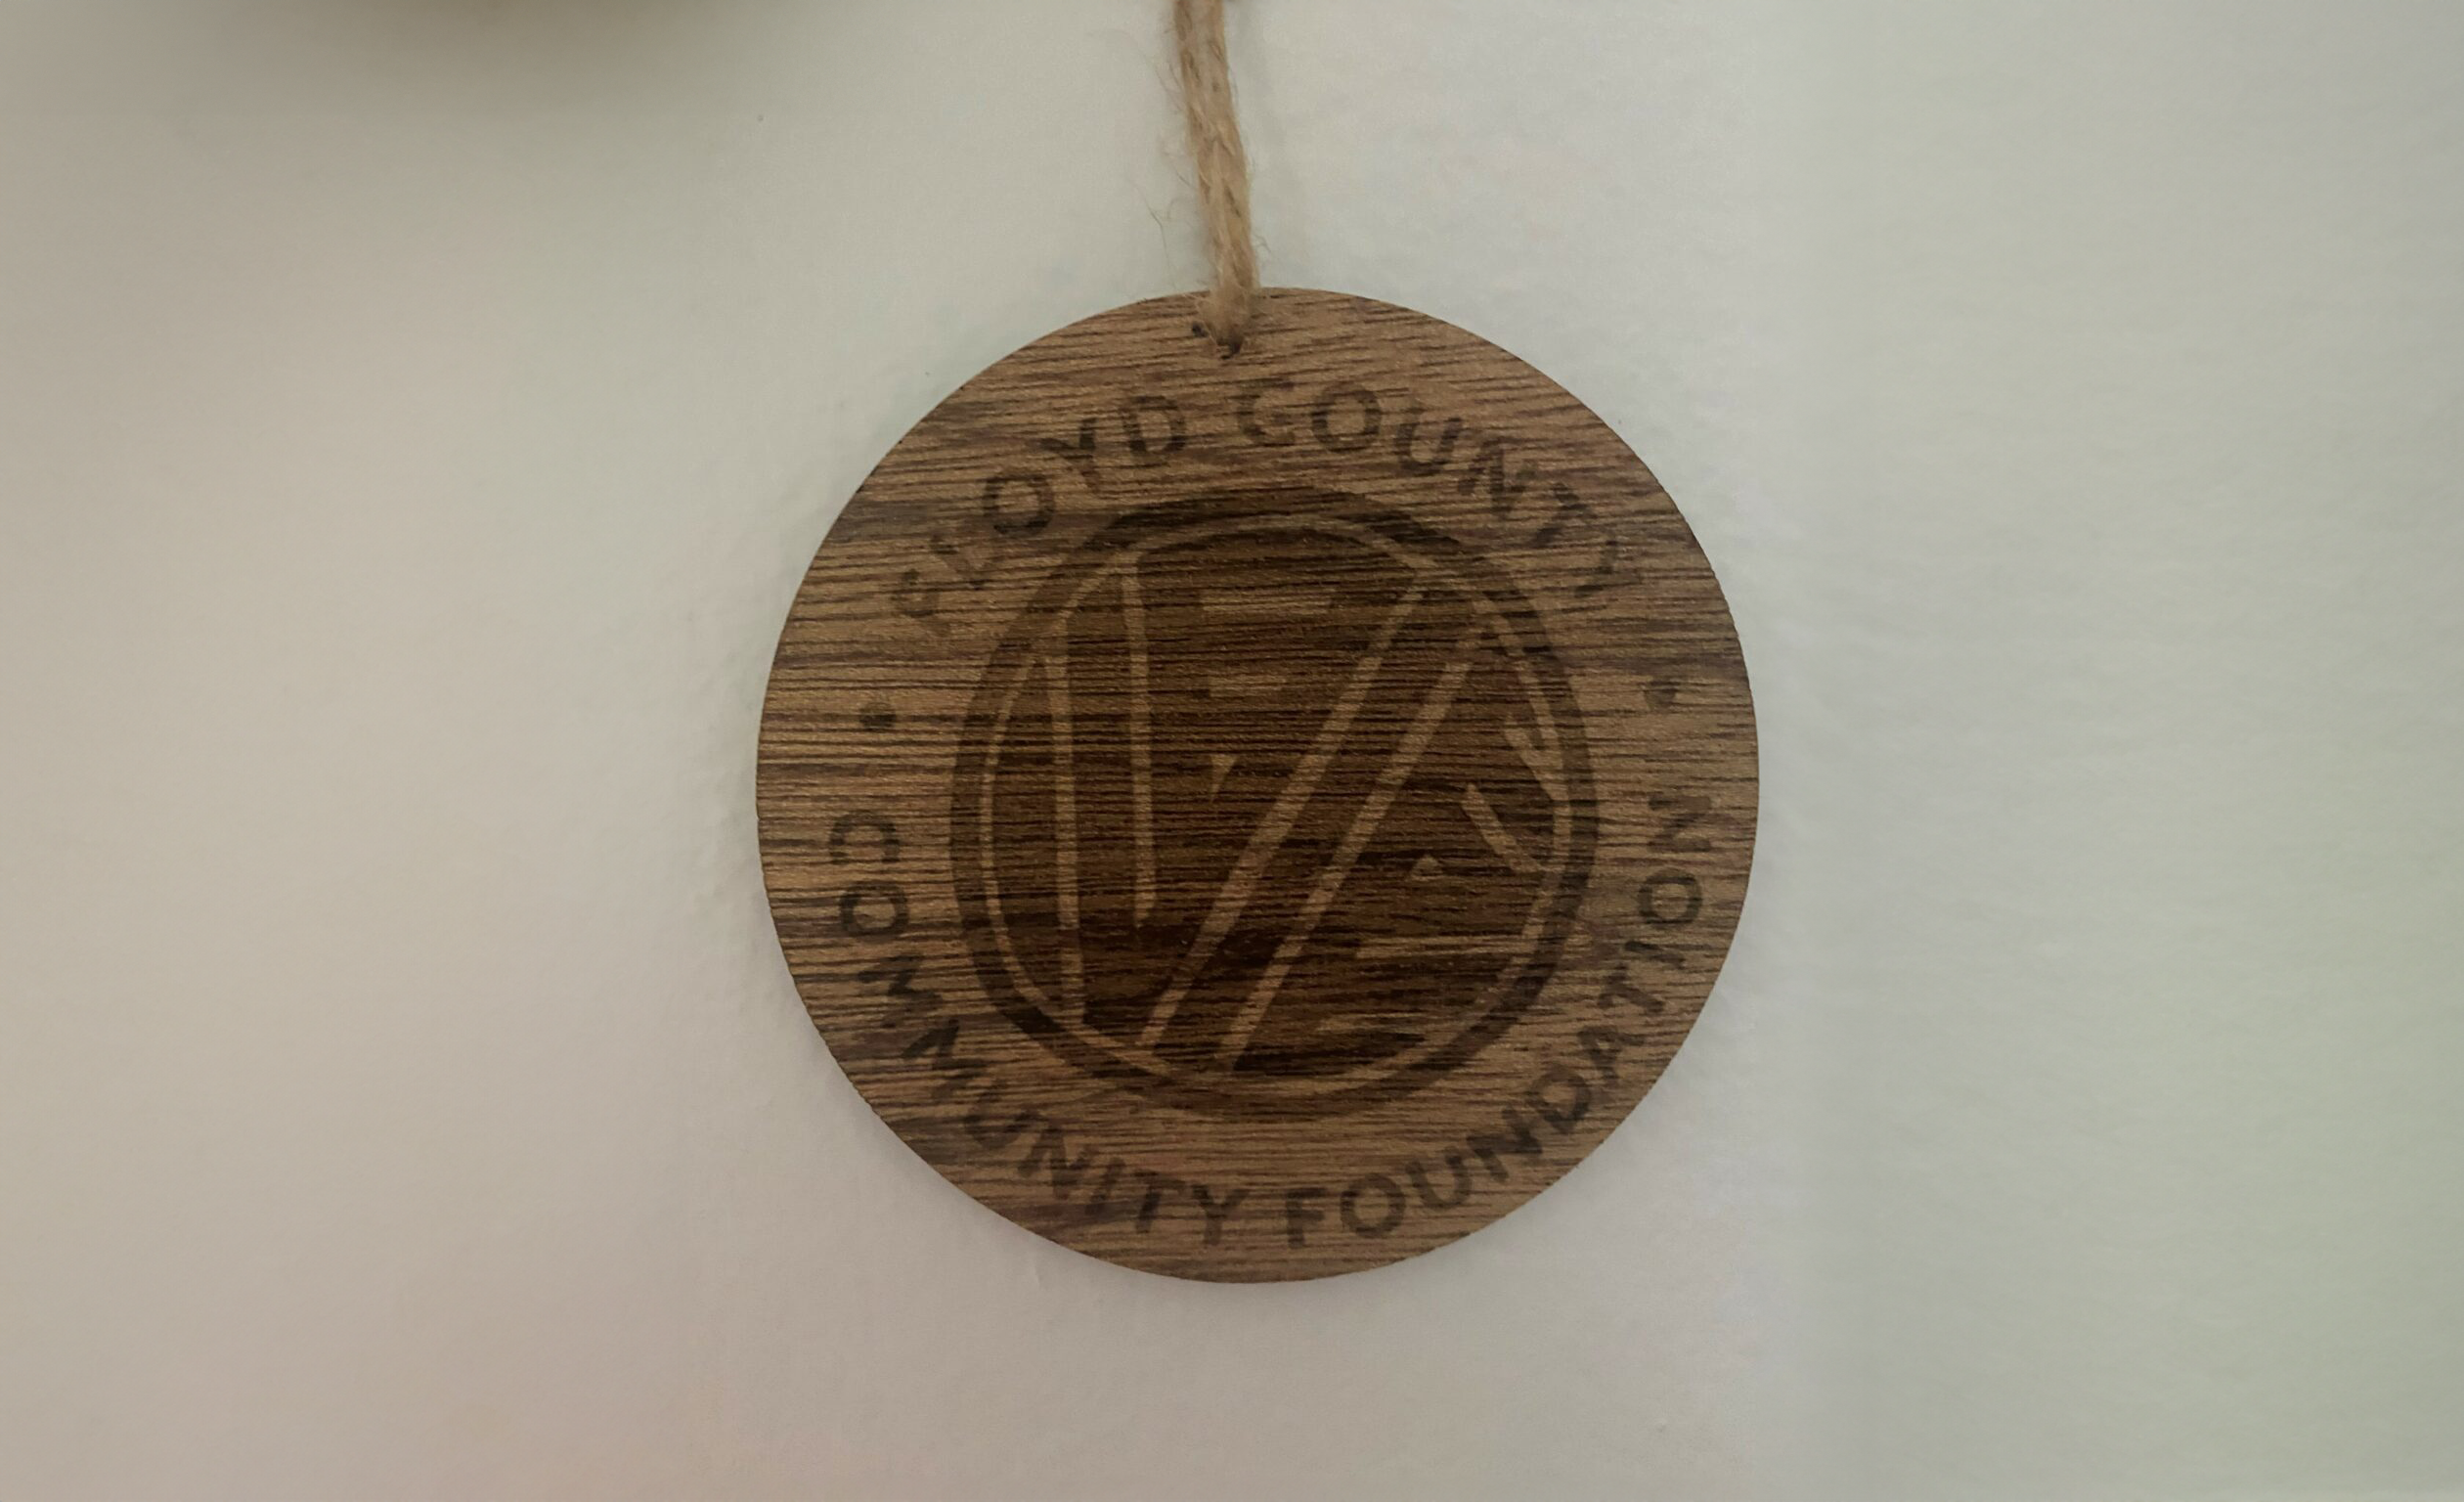 Floyd County Community Foundation Sets Goal of 100 for 396 Club